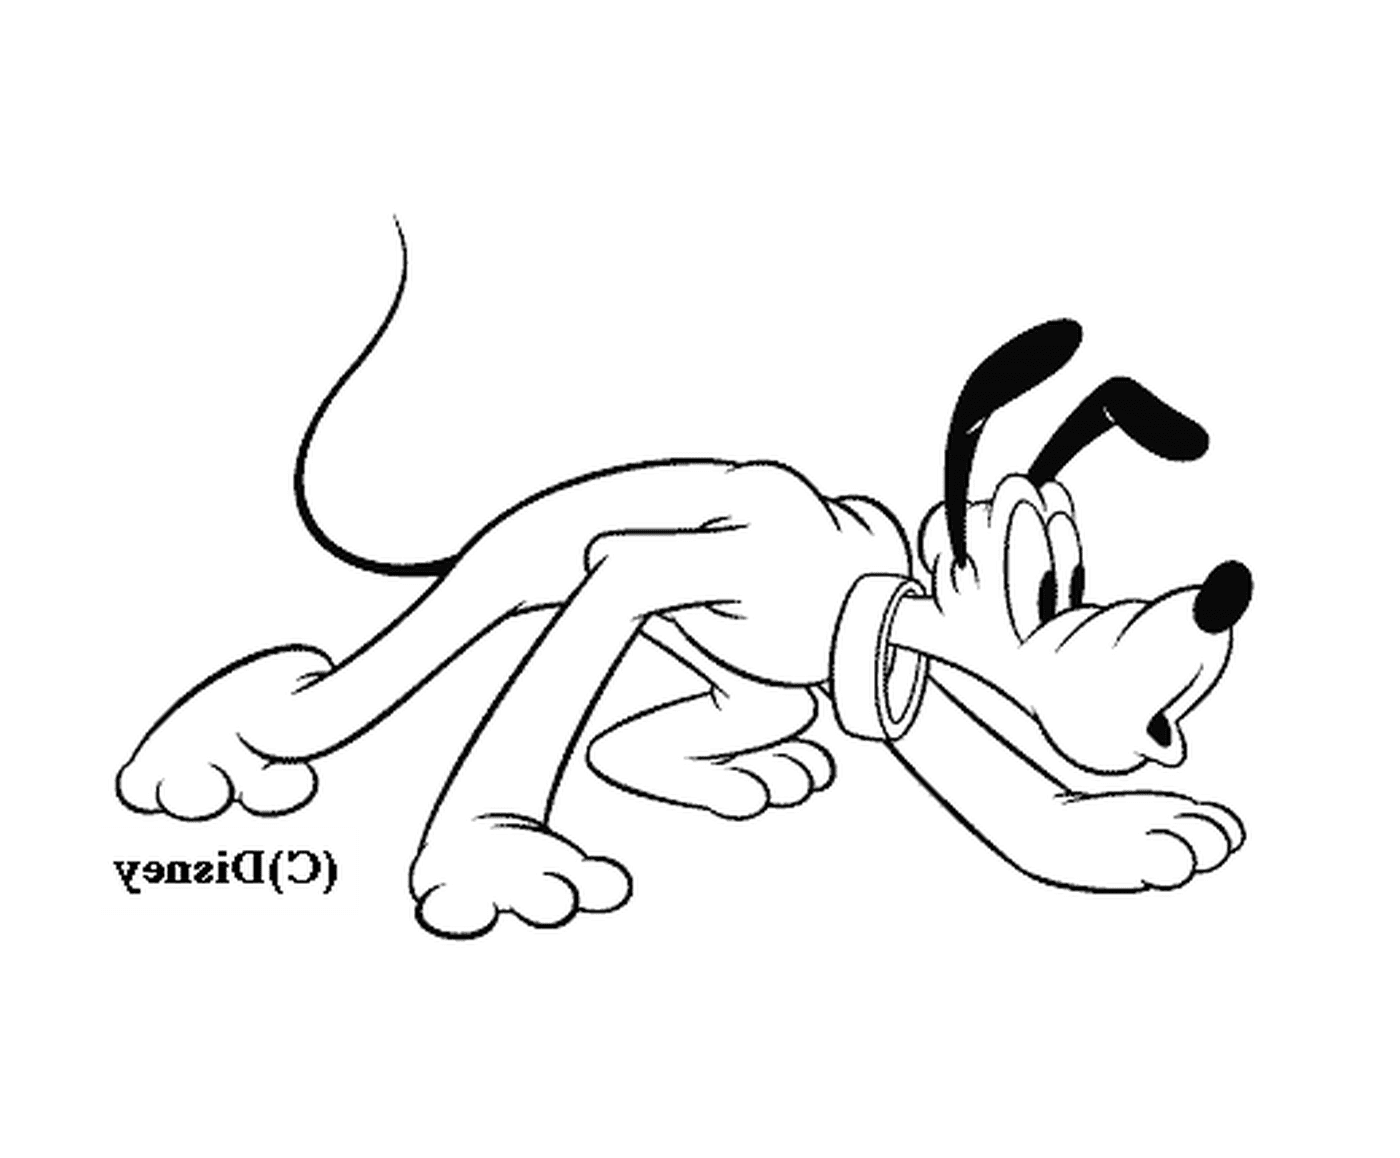  गले के चारों ओर एक कुत्ते का कार्टून 